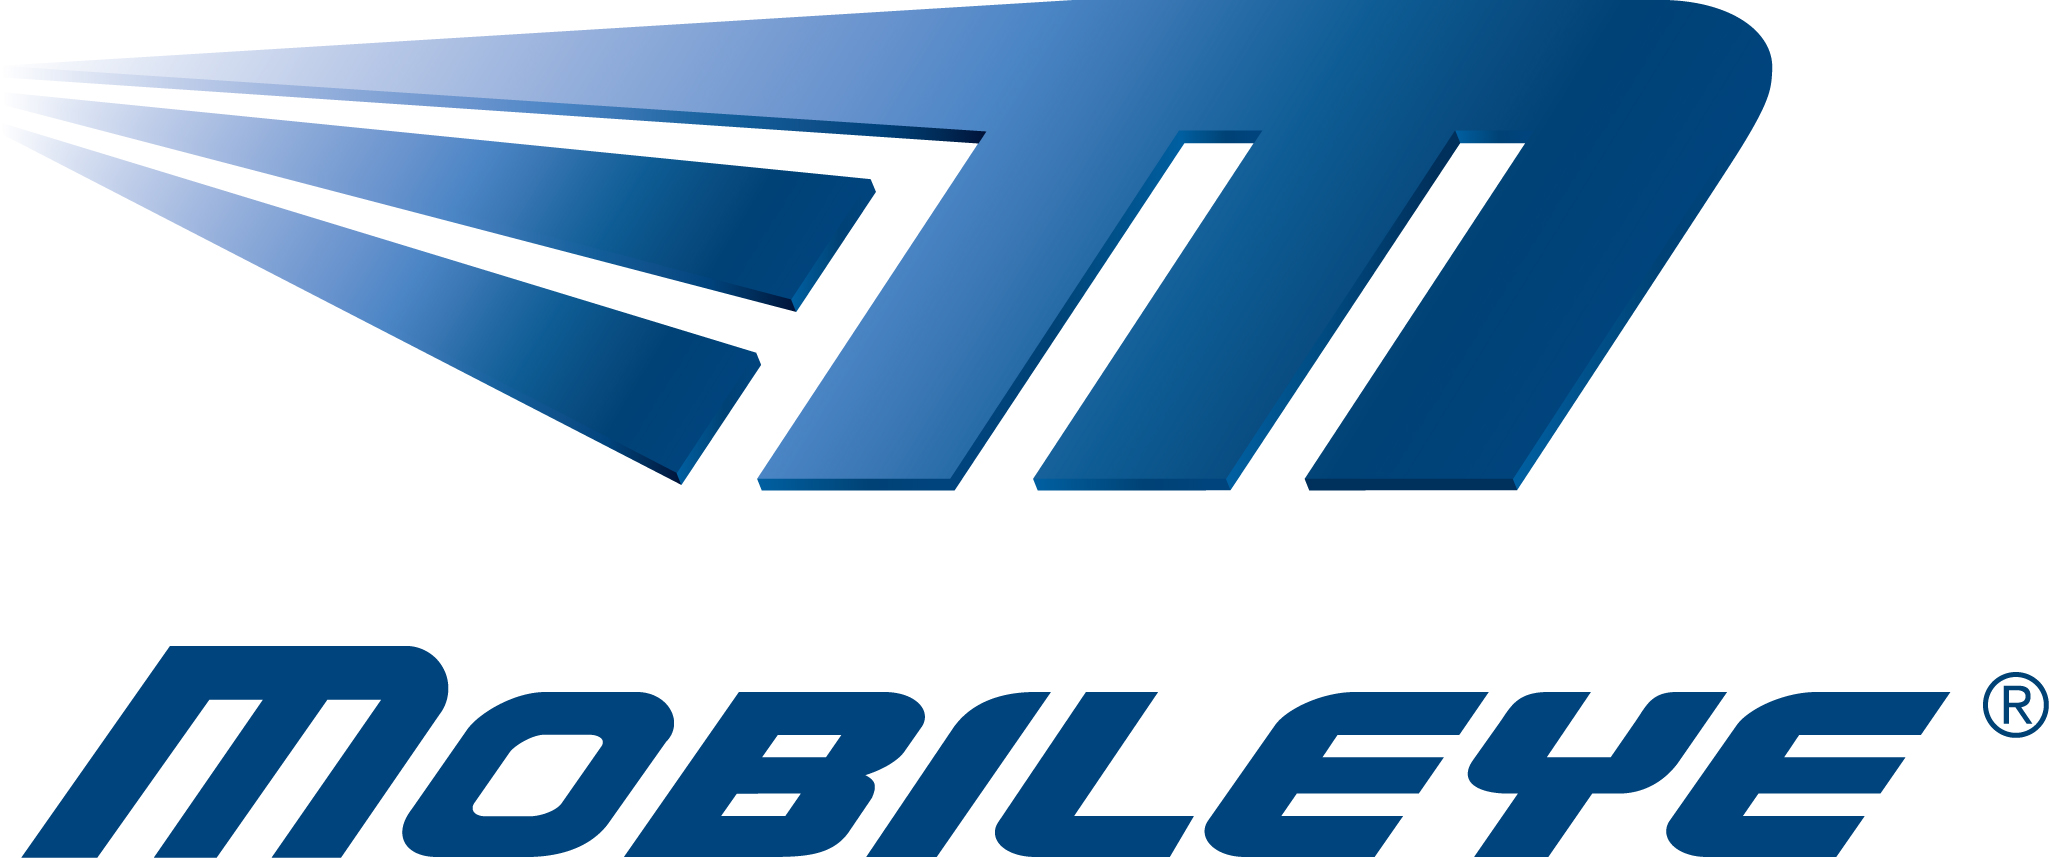 Mobileye Logo photo - 1